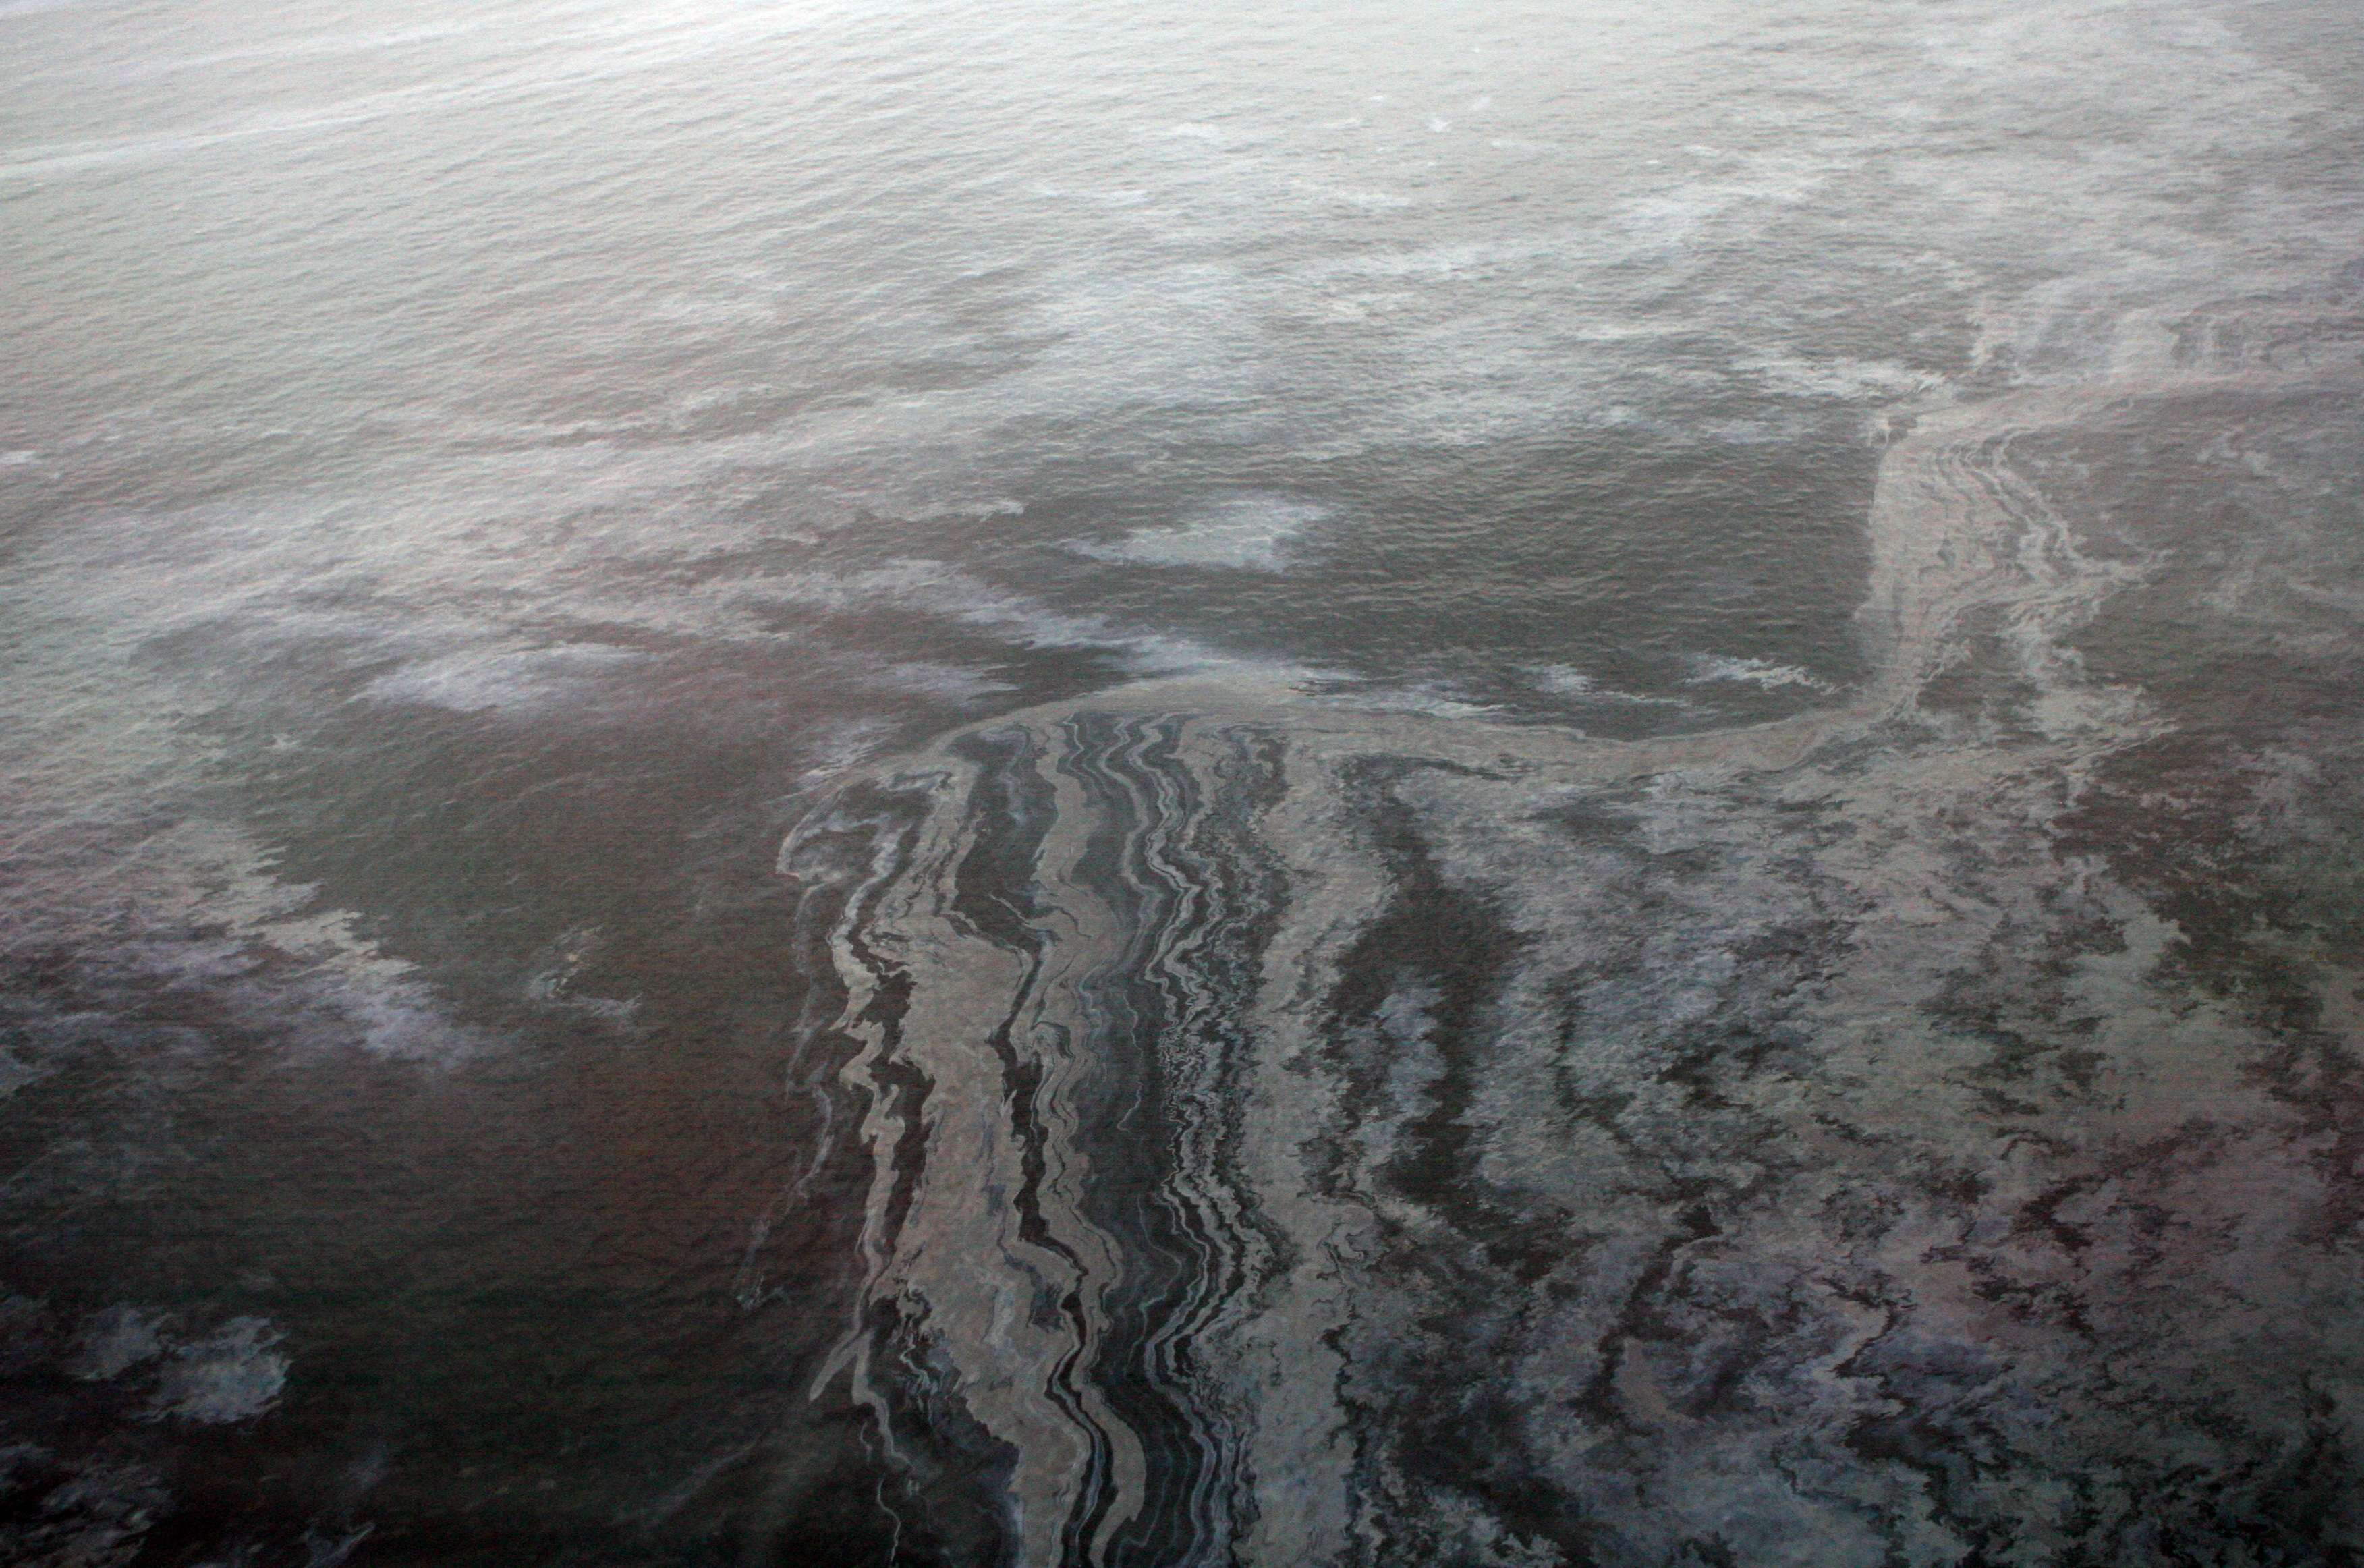 En teori kring dödsfallen är att oljeutsläpp orsakat kraftfulla vågor som lett till delfinernas inre skador.